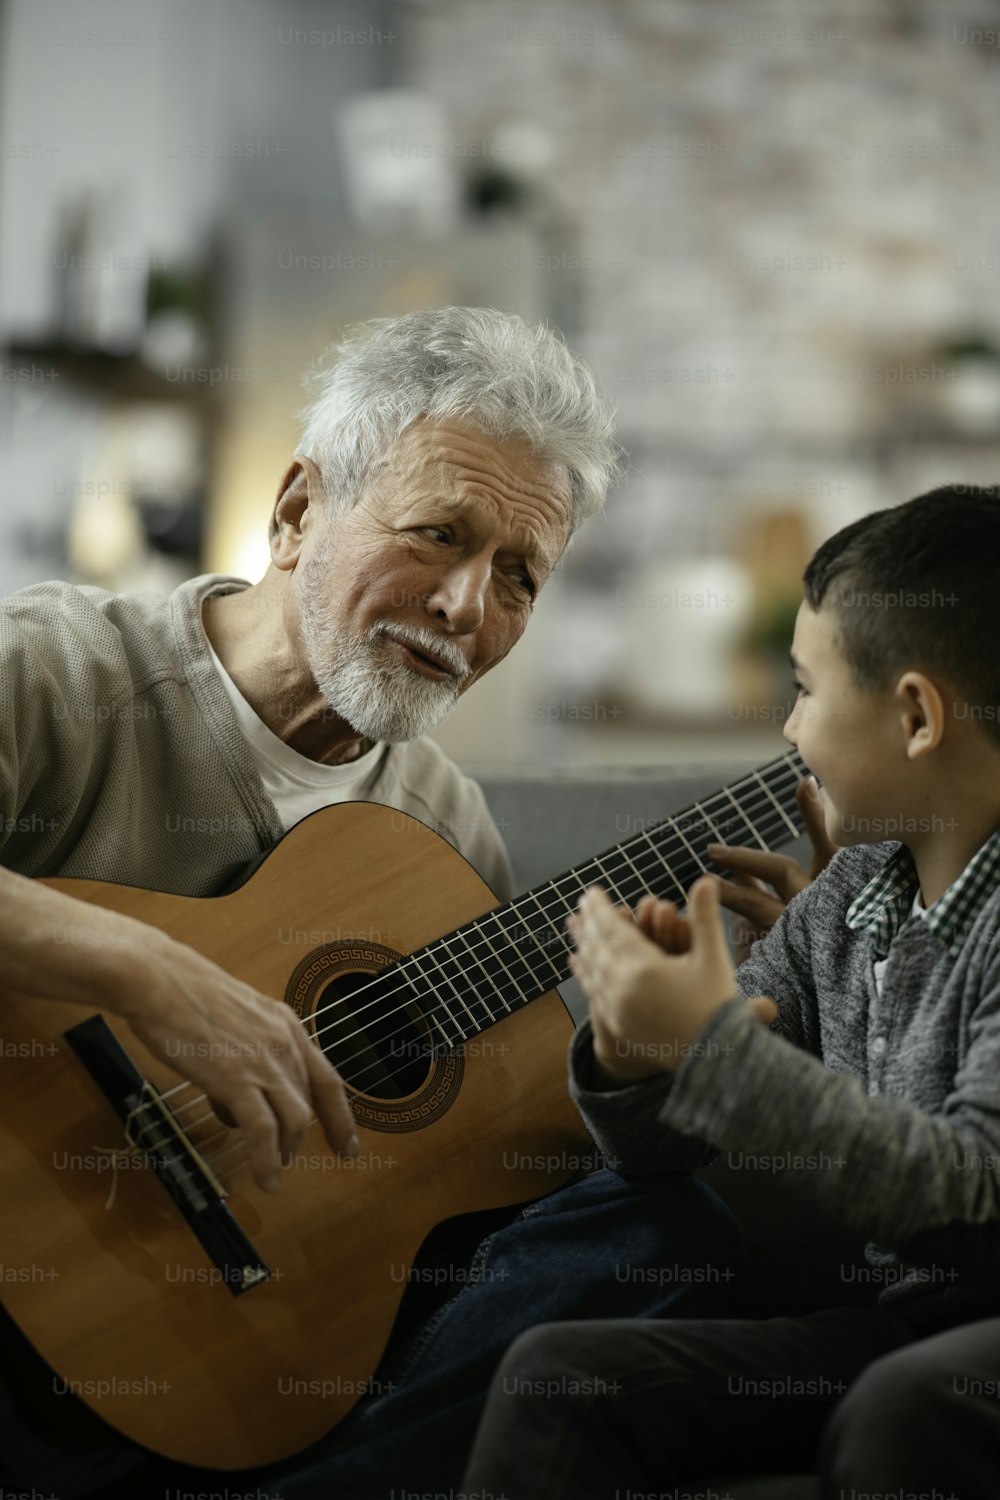 할아버지와 손자가 기타를 연주하고 있다. 할아버지와 손자가 집에서 놀고 있다.